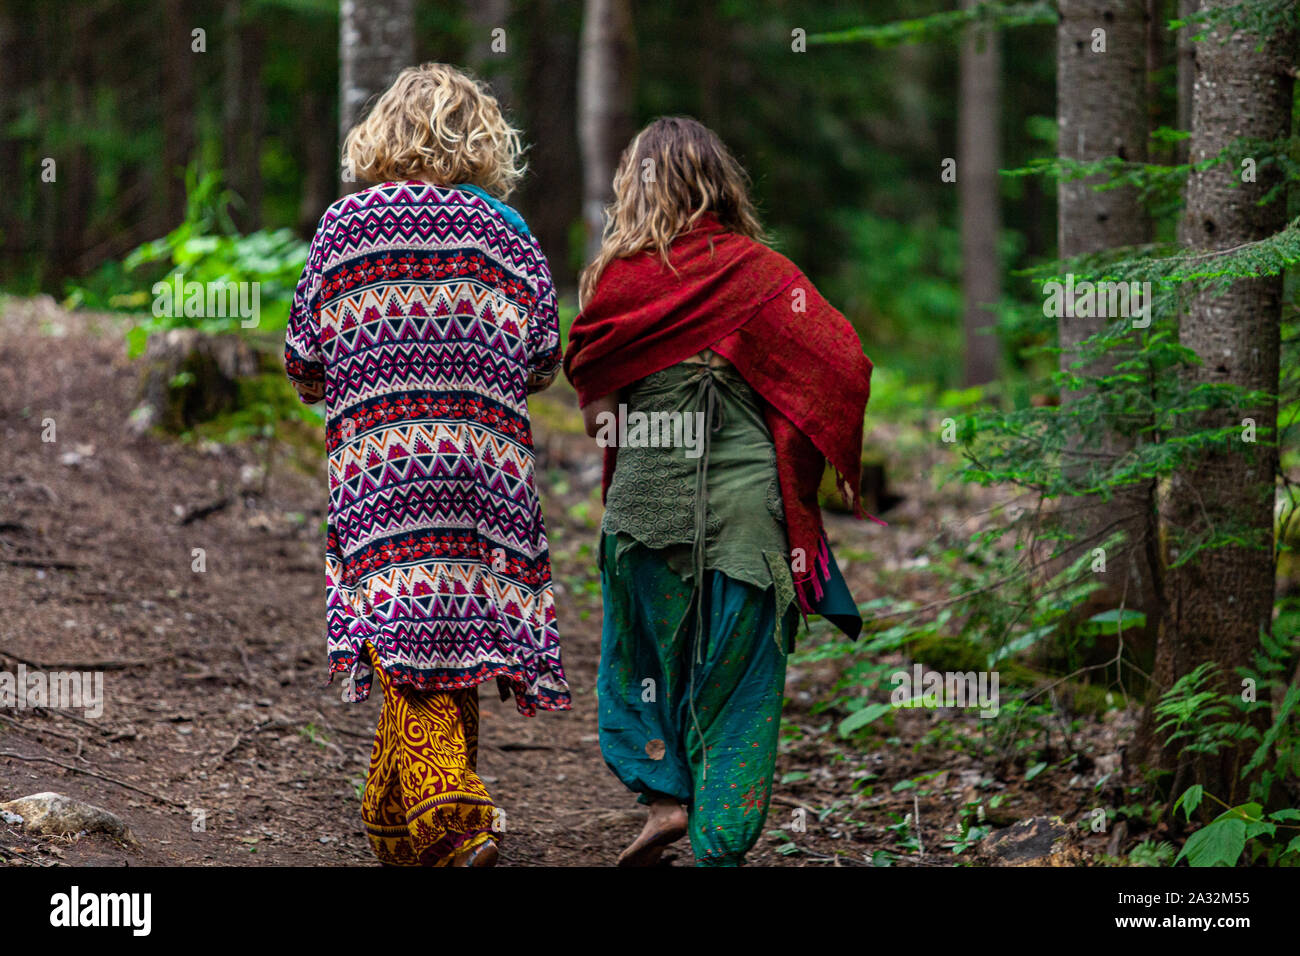 Deux femmes portant une décoration lumineuse et colorée de style bohème  vêtements sont vus de dos, marcher ensemble à travers un sentier forestier  au cours d'une retraite à l'esprit Photo Stock -